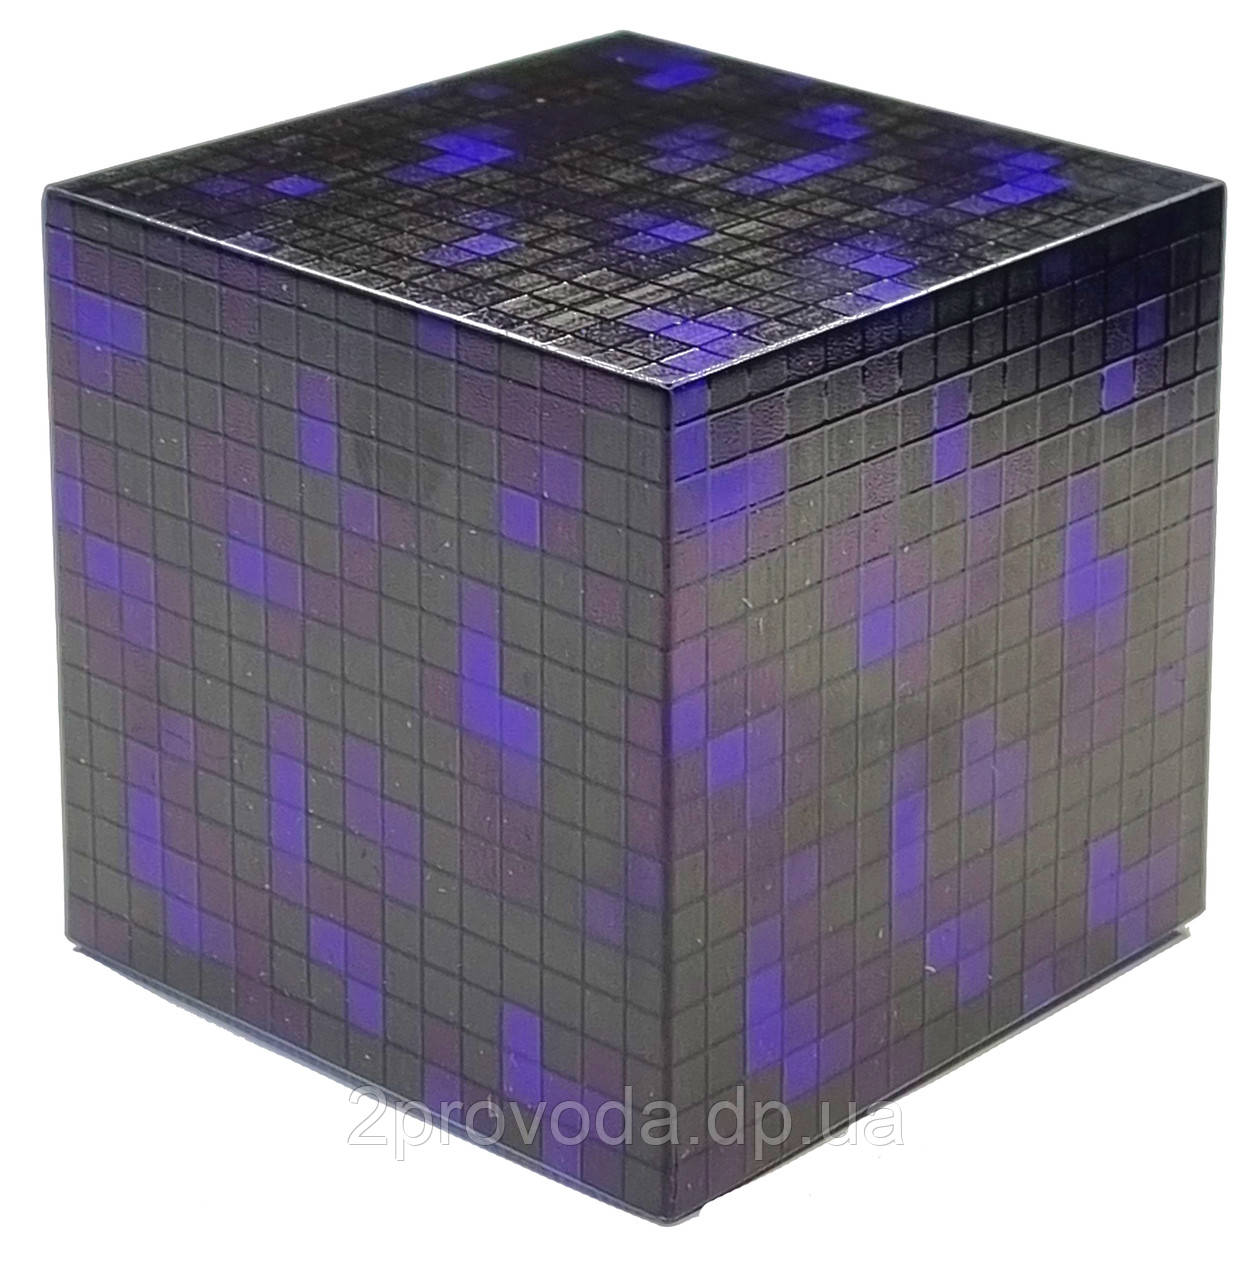 Блок нічник обсидіан Майнкрафт 7.5 см темно-фіолетовий акумулятор